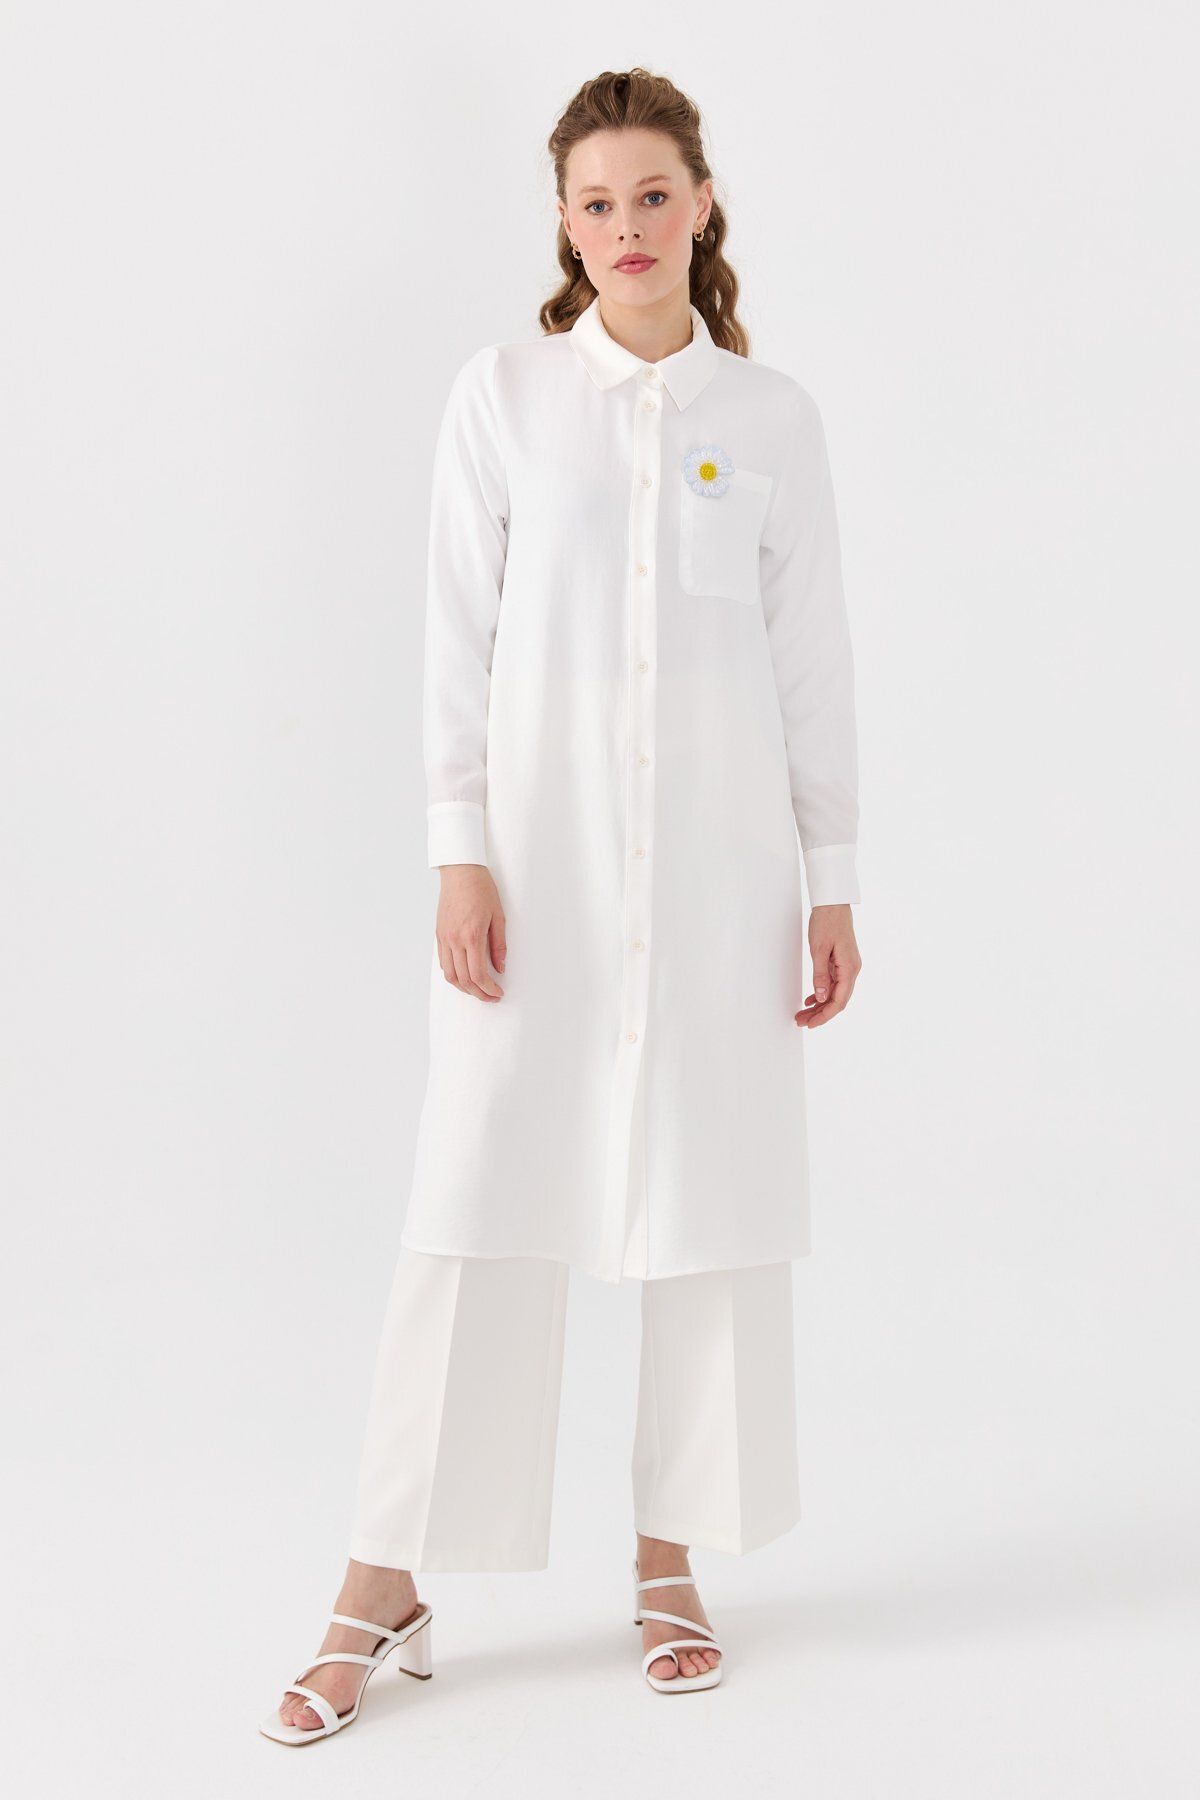 Nihan Tek Cepli Uzun Gömlek Tunik Beyaz